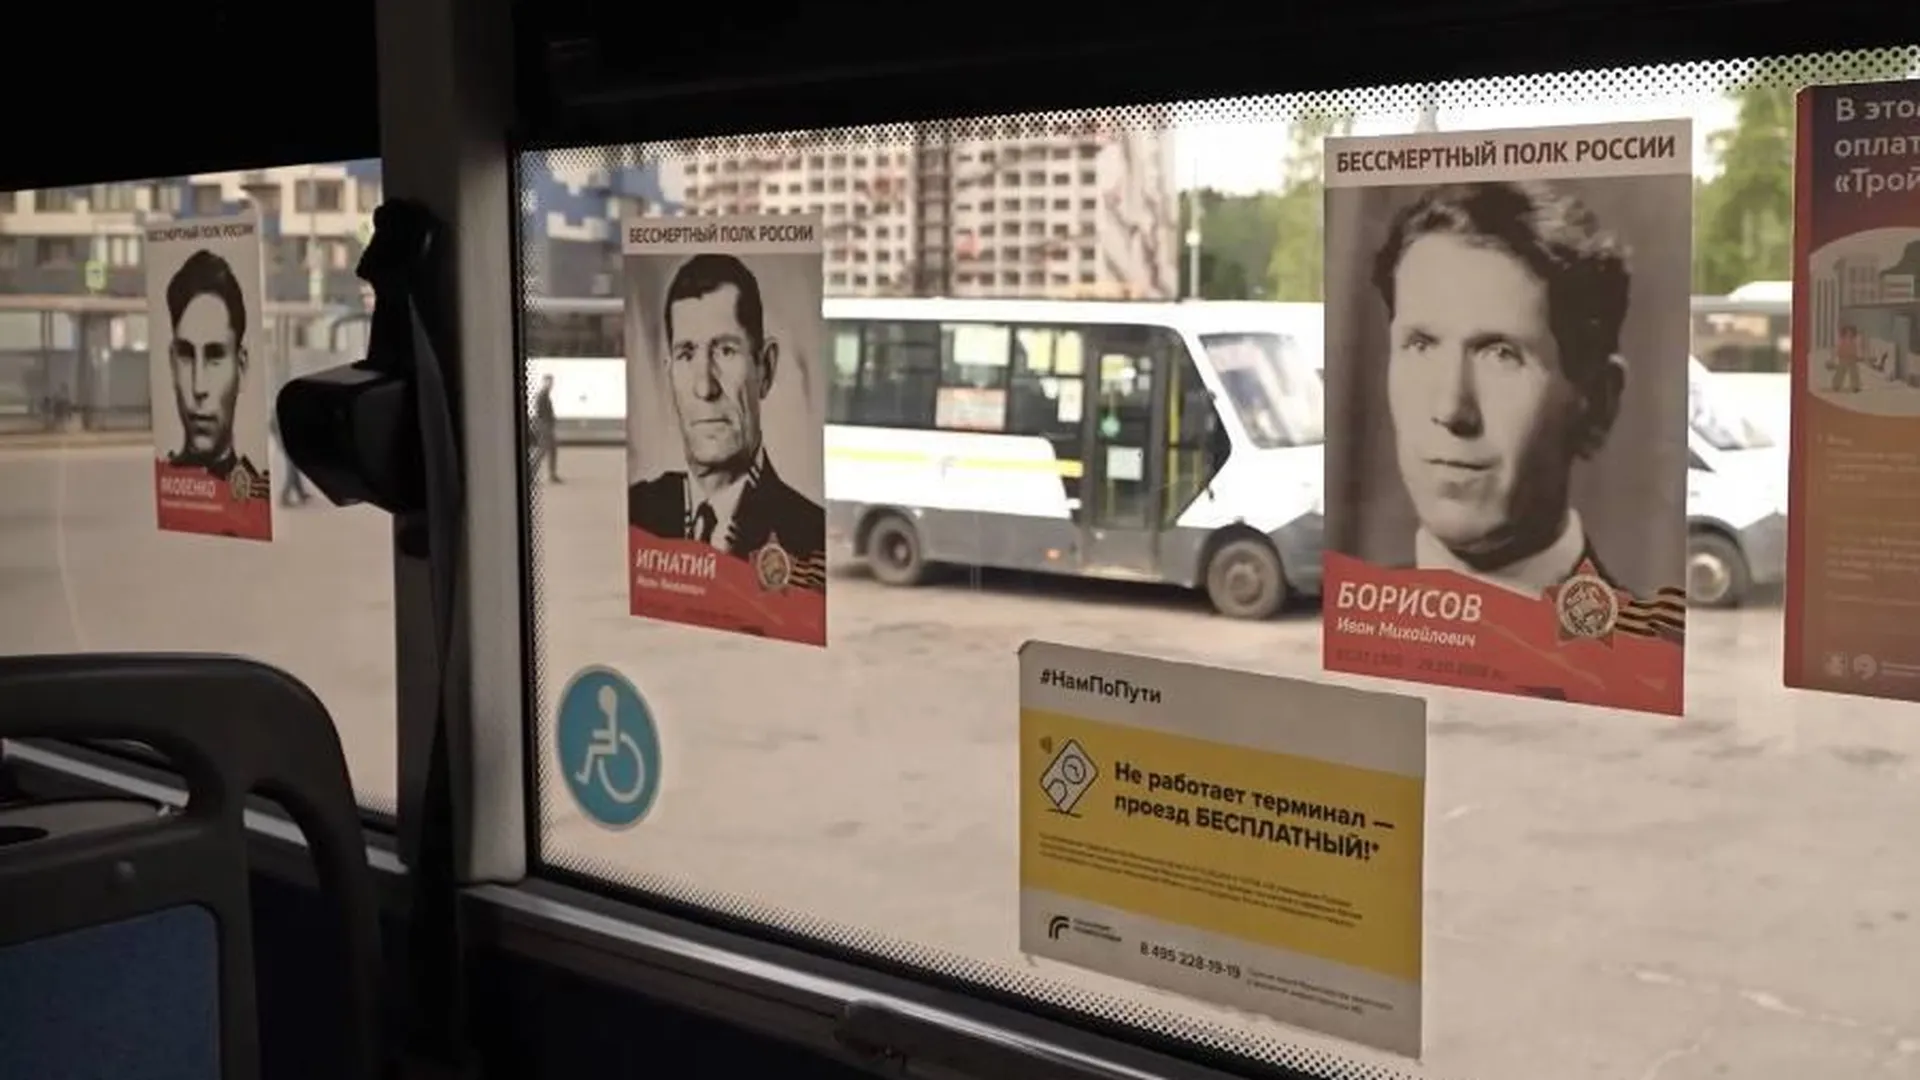 Акция «Бессмертный полк в автобусах» пройдет в Подмосковье